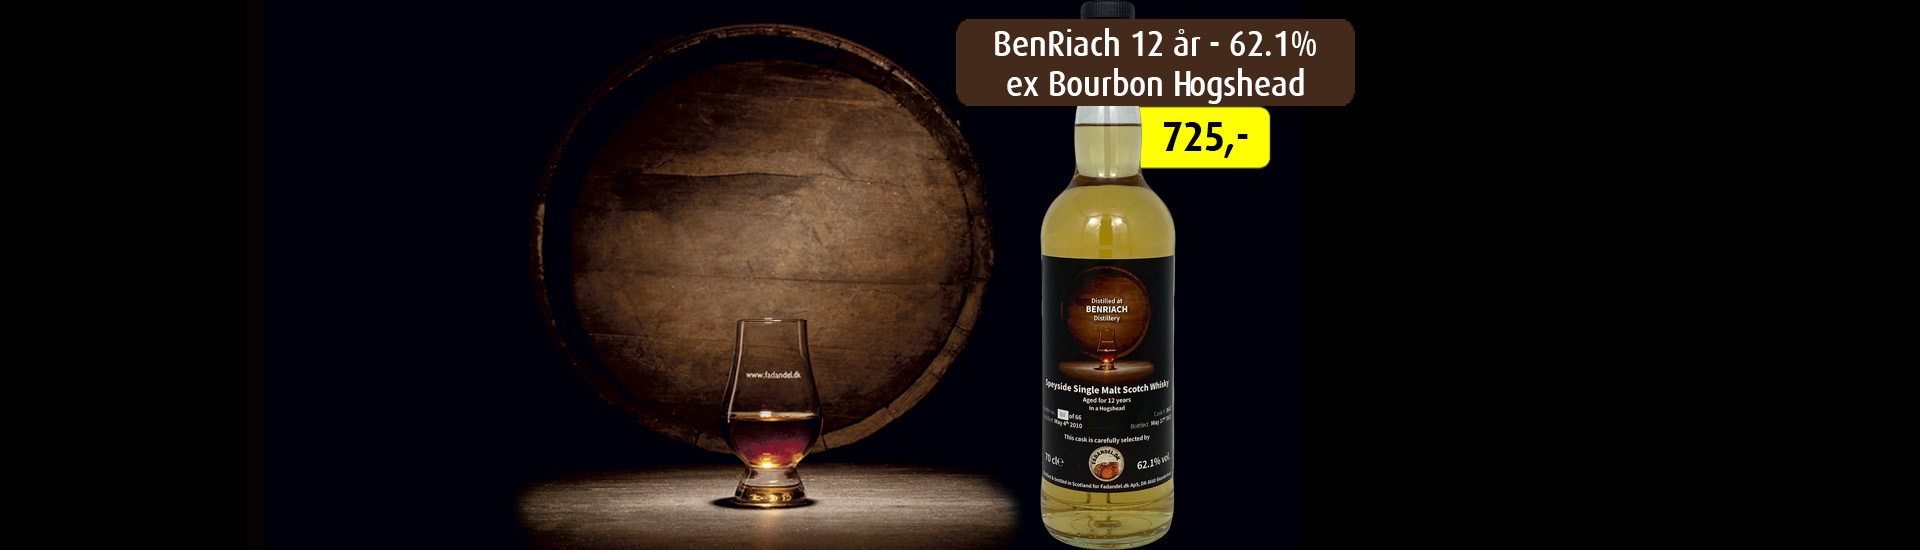 BenRiach 12Y Ex Bourbon Hogshead 62.1% - Fadandel.dk